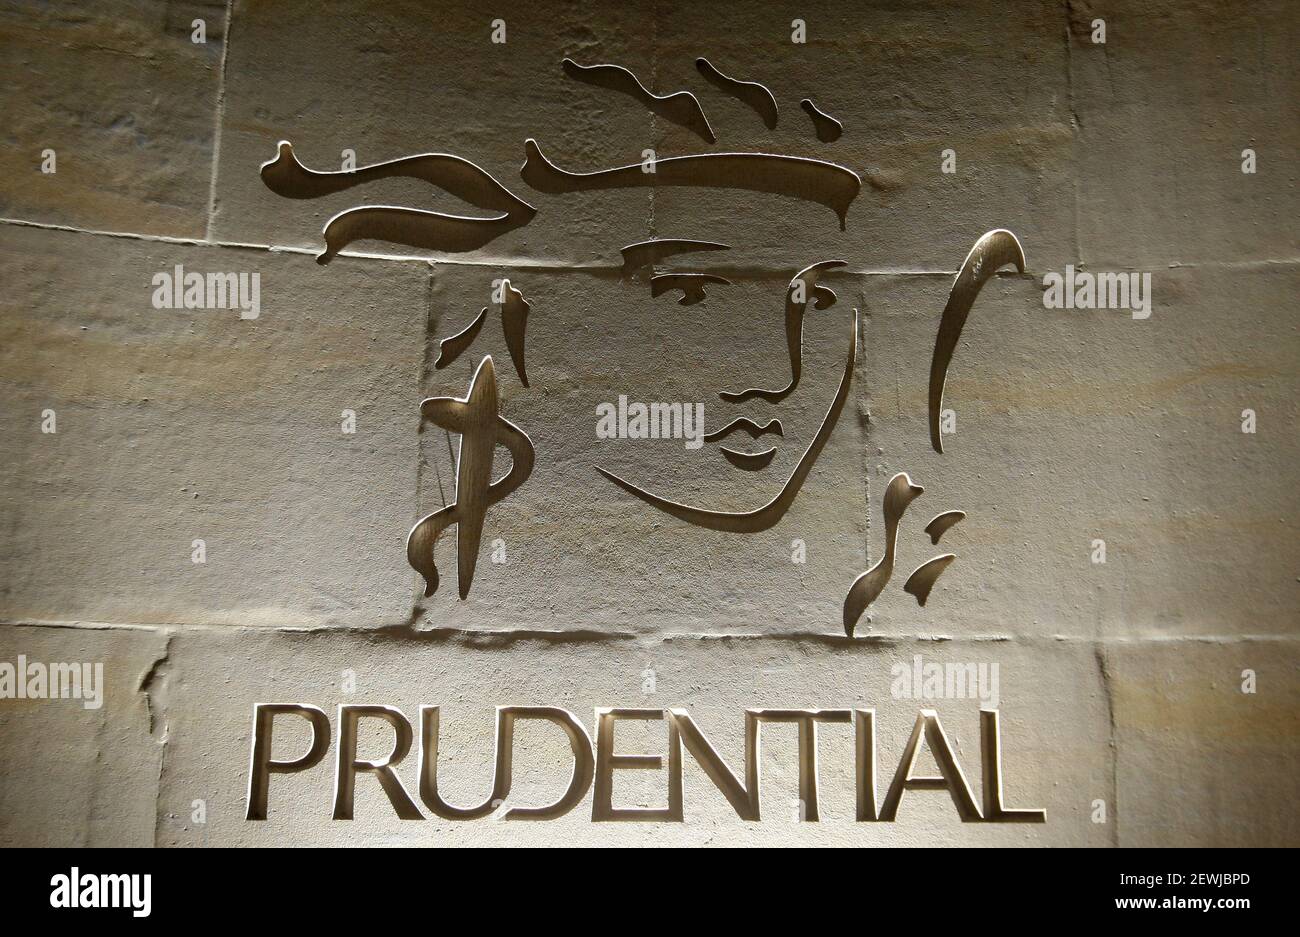 File foto datata 24/1/2011 del logo di Prudential. Il gigante dell'assicurazione sta valutando la possibilità di spillare gli investitori per tra 2.5 miliardi e 3 miliardi di dollari (£1.8 miliardi a £2.2 miliardi) in un'offerta per aumentare la disponibilità delle sue azioni a Hong Kong, e dare più flessibilità finanziaria. Data di emissione: Mercoledì 3 marzo 2021. Foto Stock